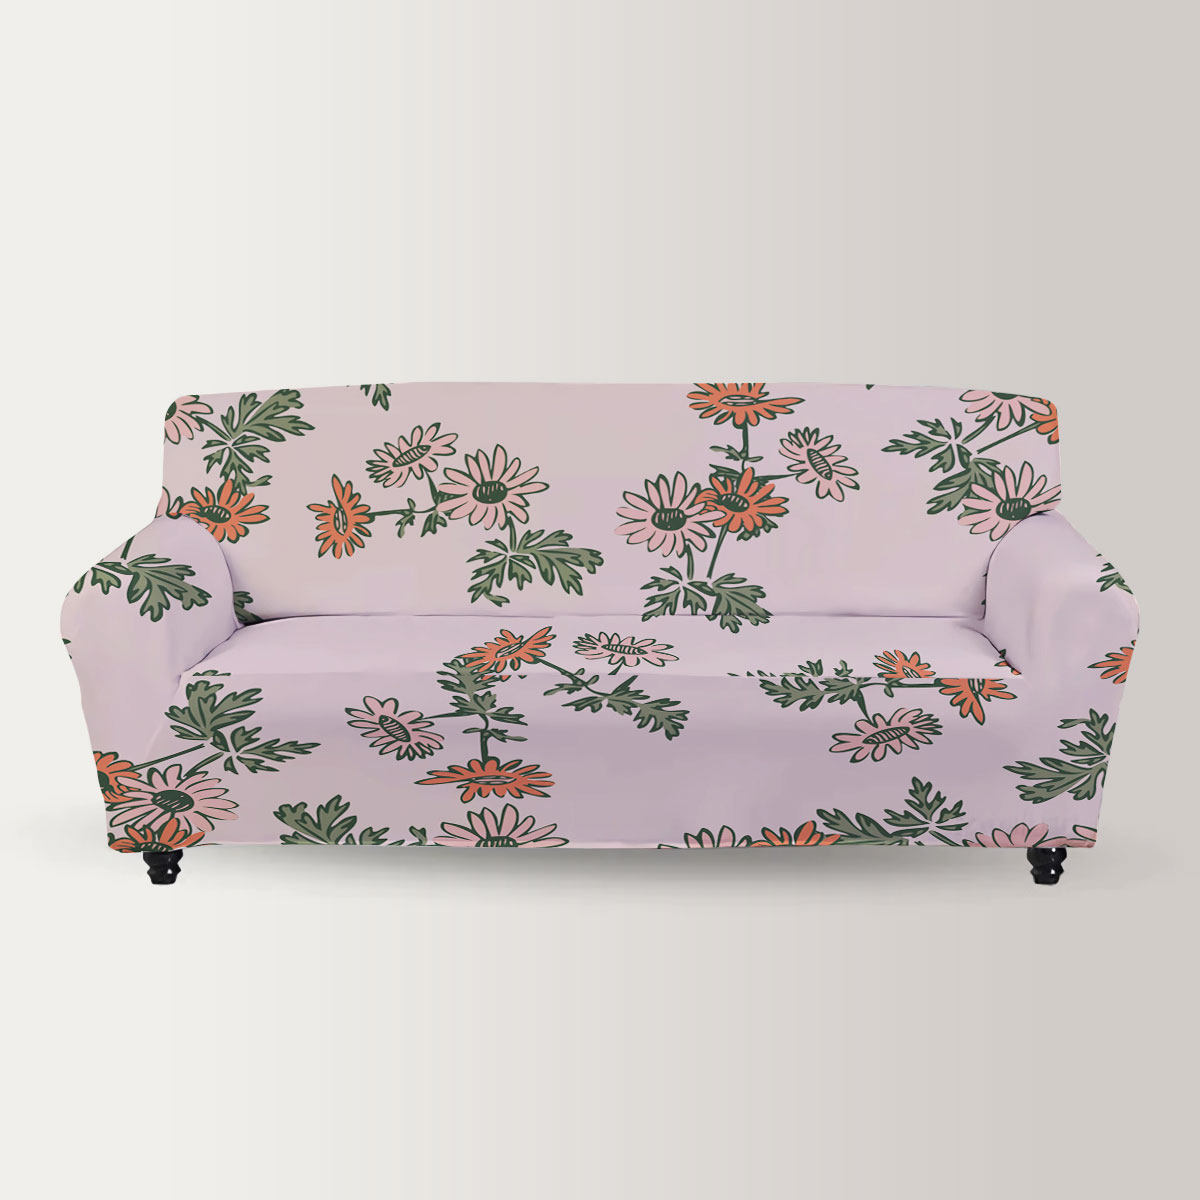 Bloom Chrysanthemum Sofa Cover